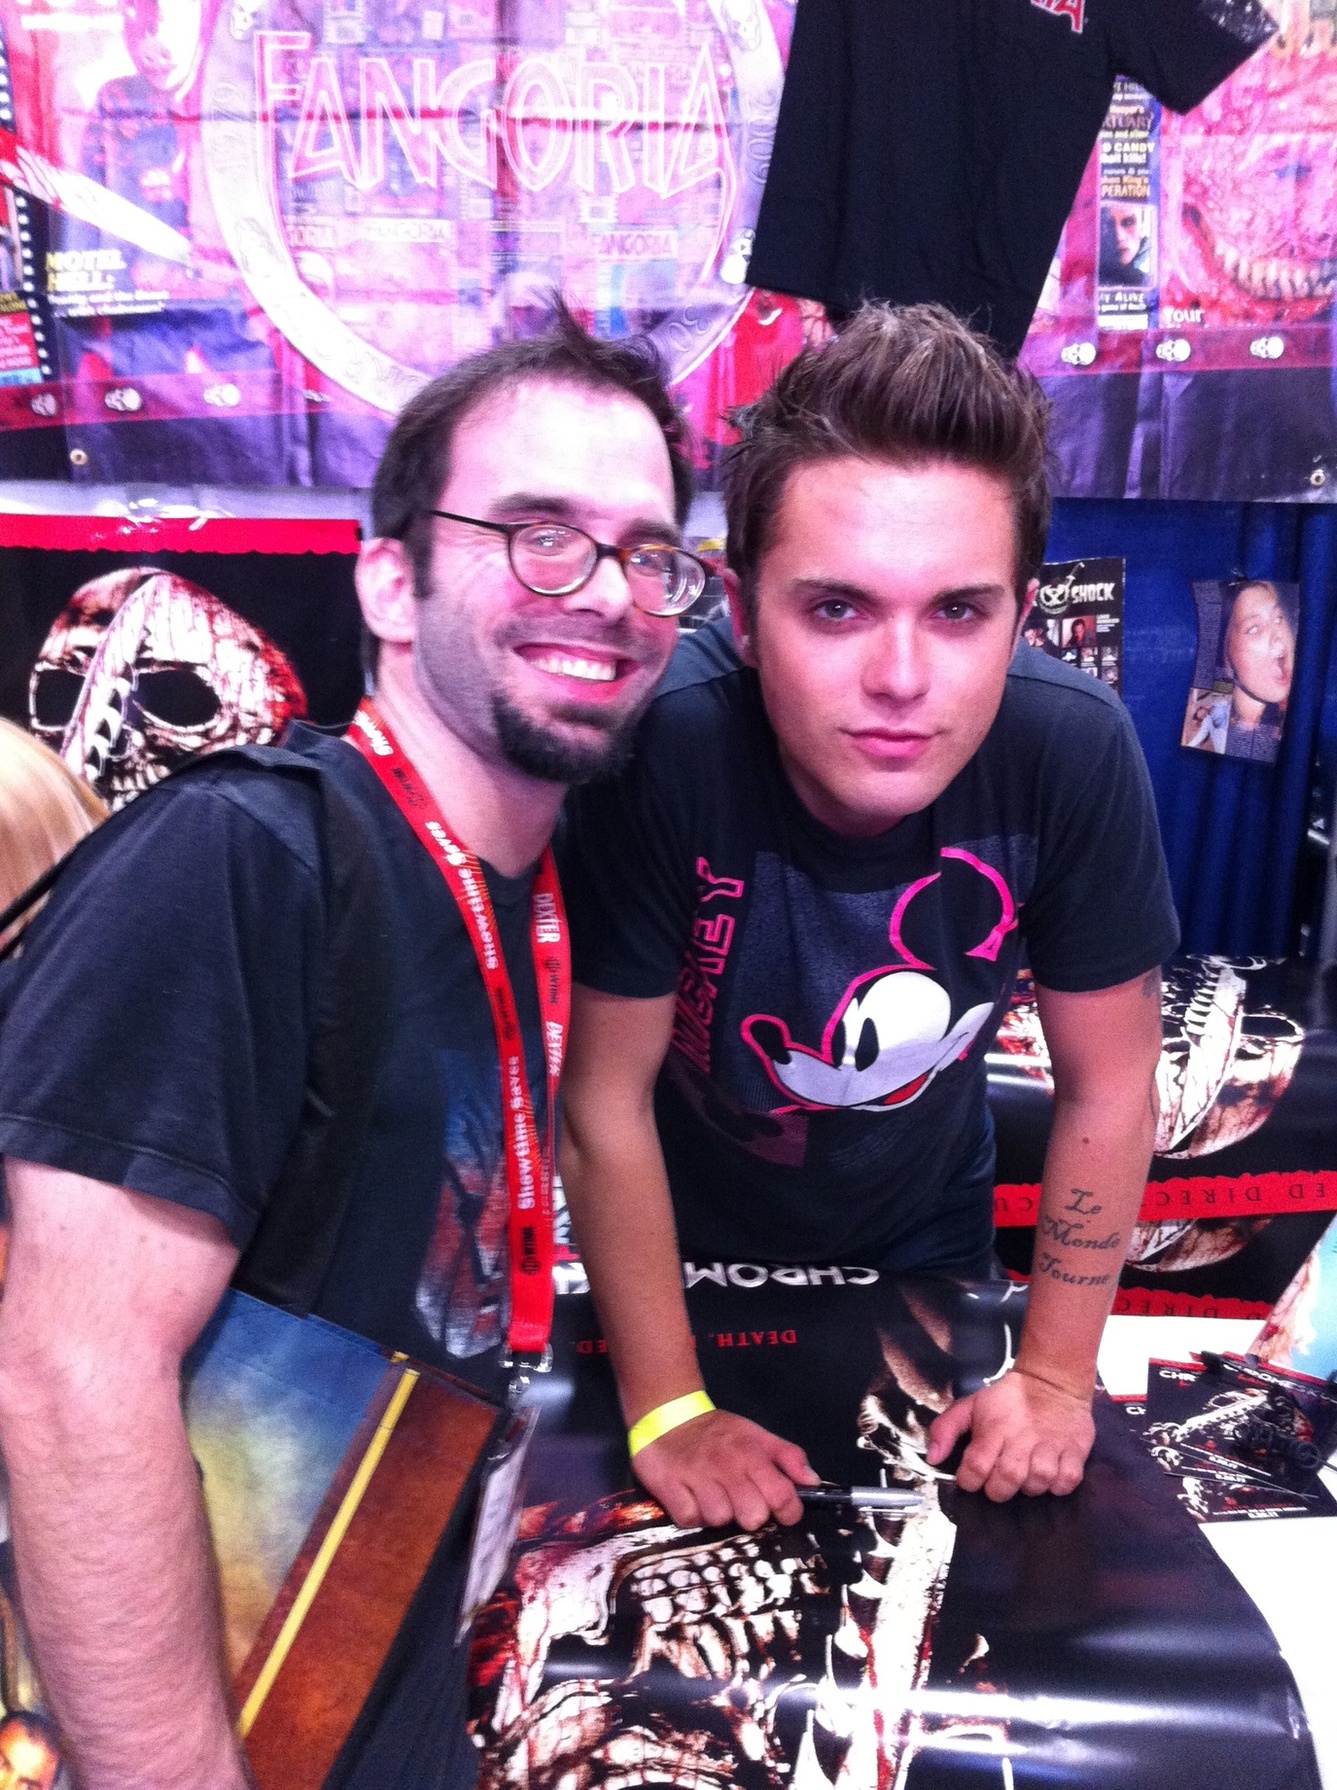 Thomas Signing at Comic Con